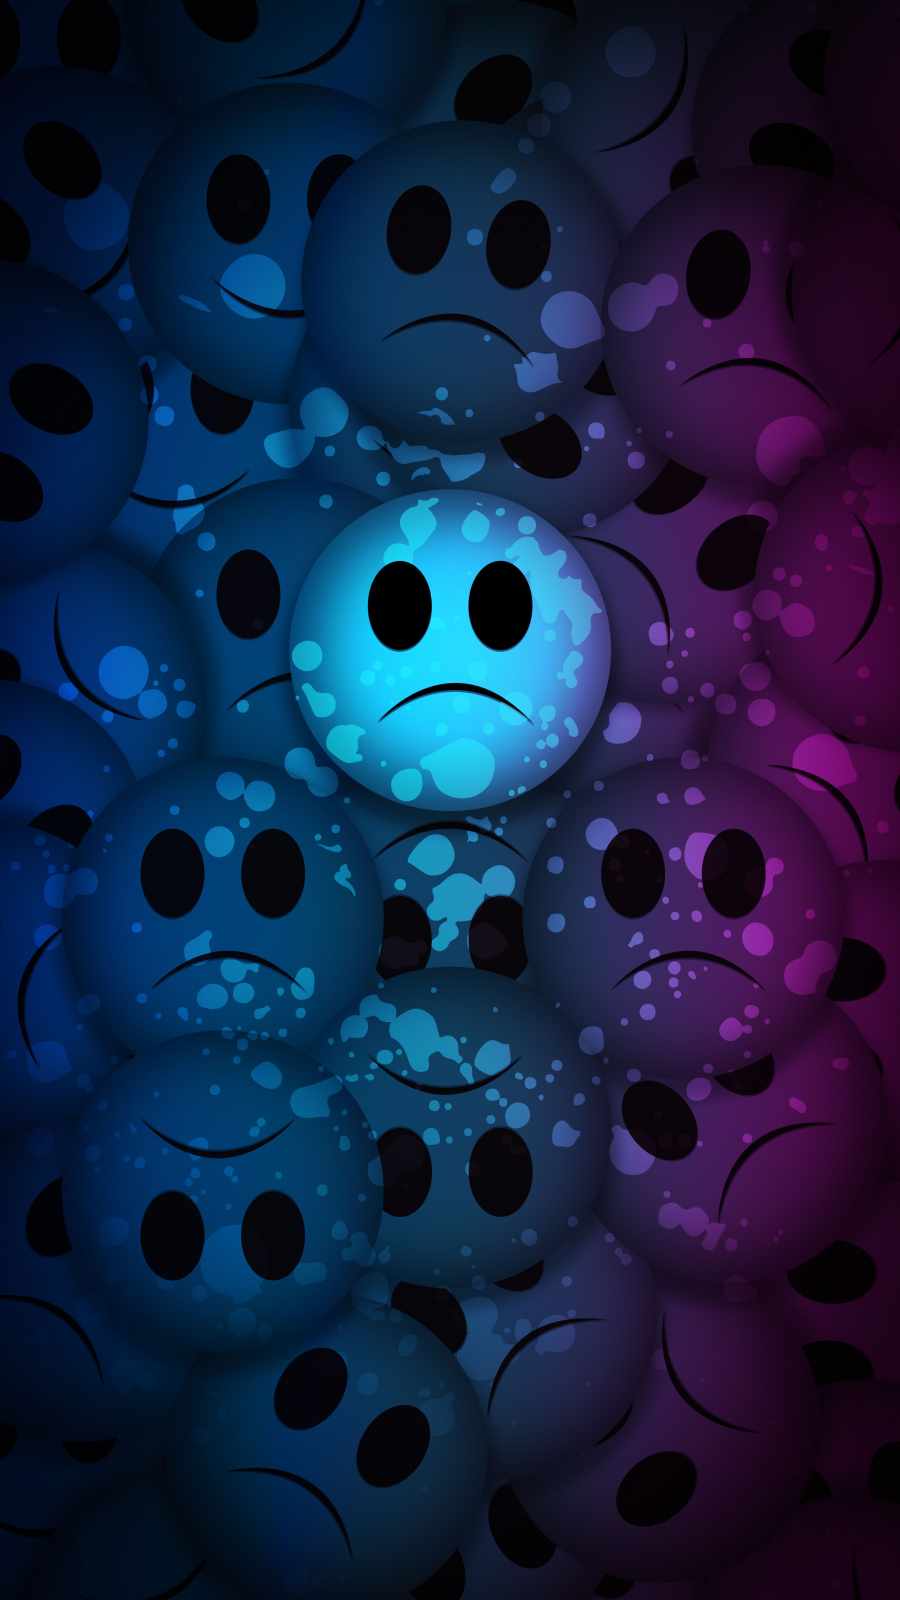 Sad Faces IPhone Wallpaper Wallpaper, iPhone Wallpaper